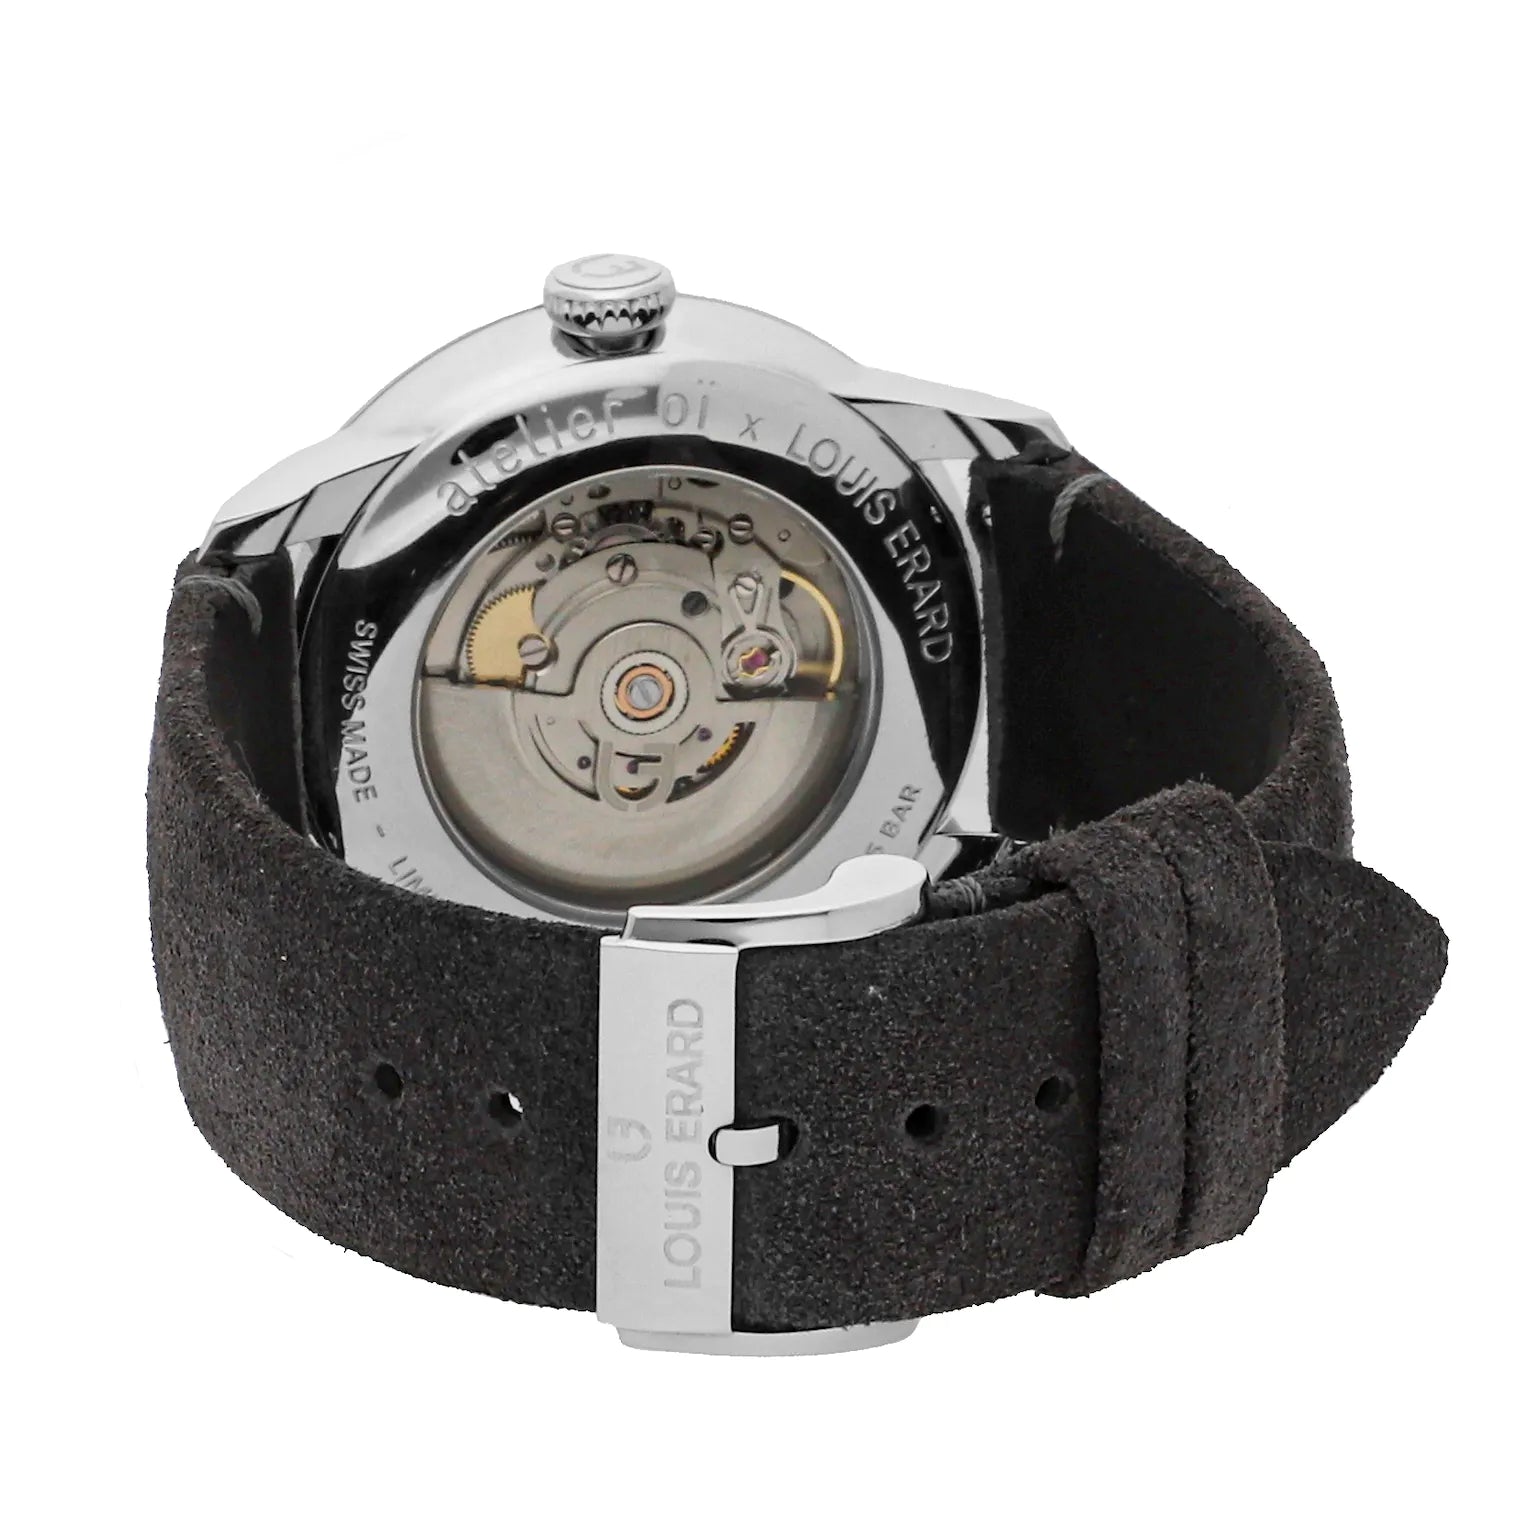 Louis Erard Men's Excellense Le  Regulateur Limited Edition Watch